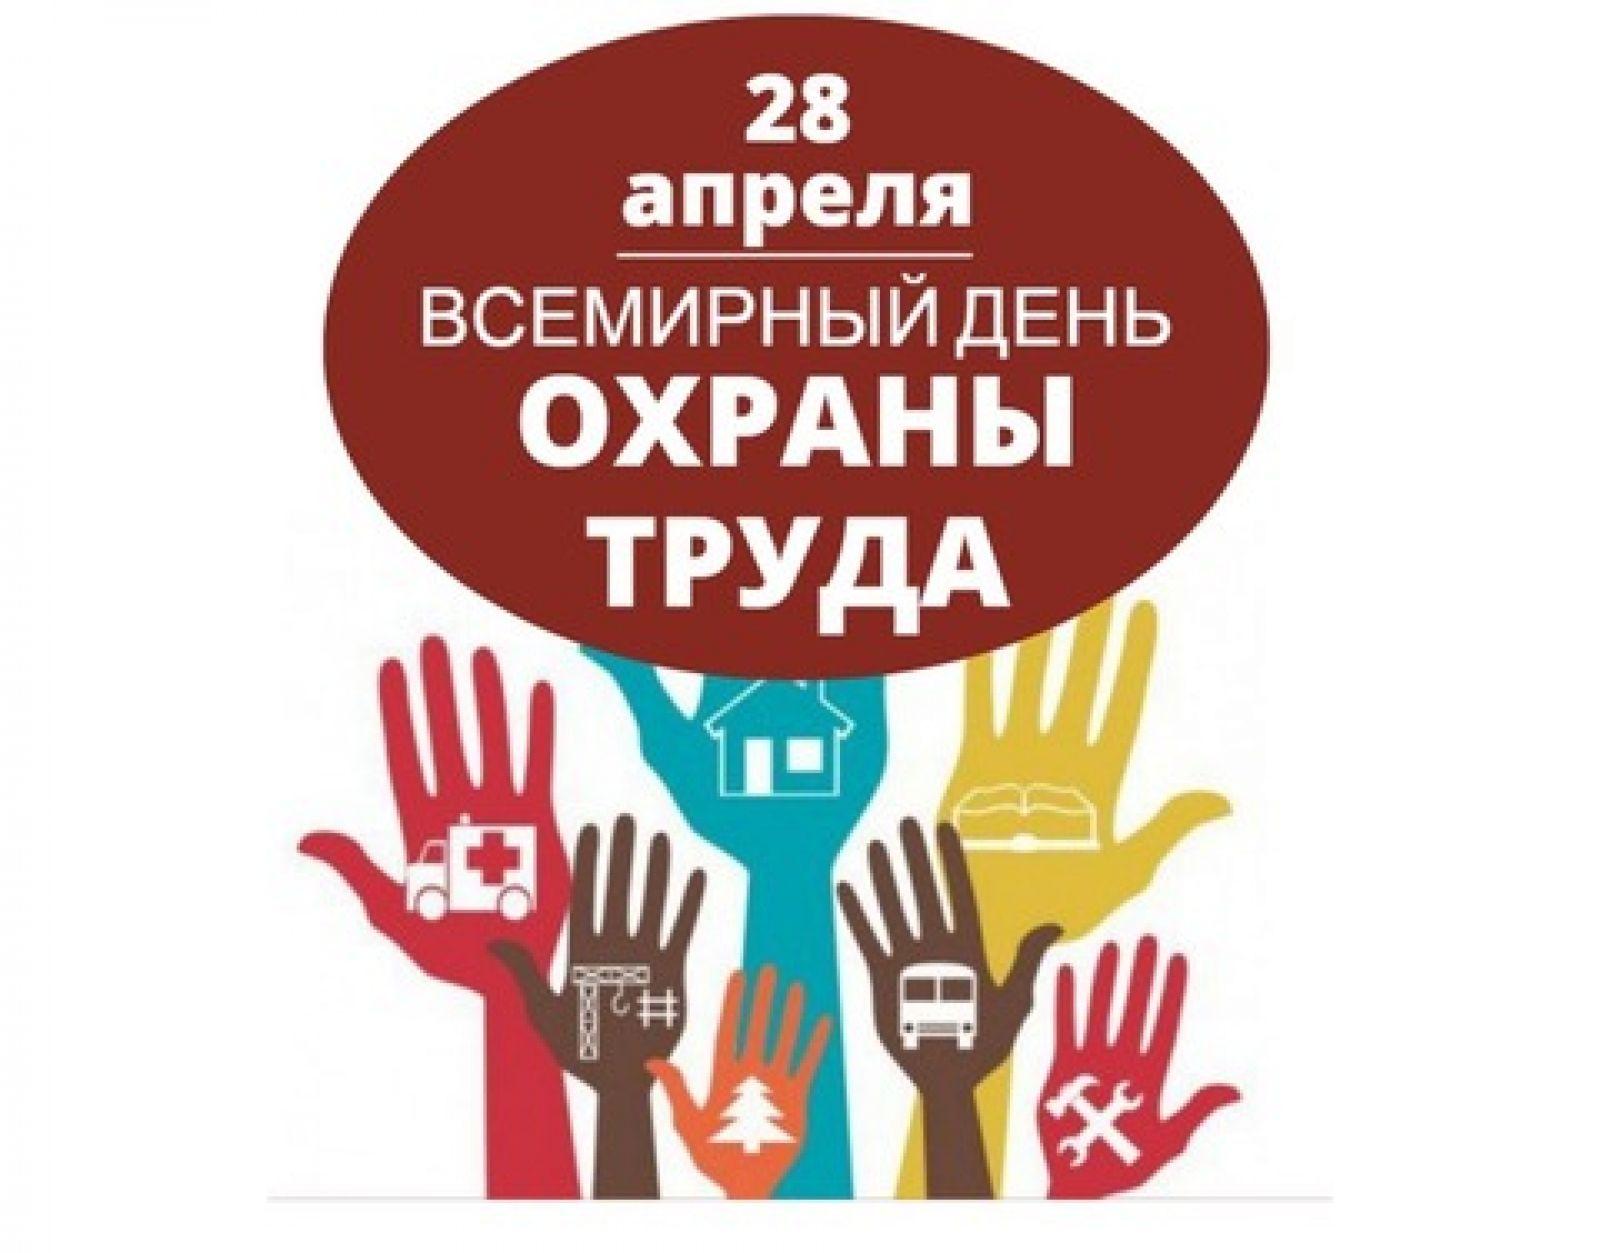 28 апреля - Всемирный день охраны труда 